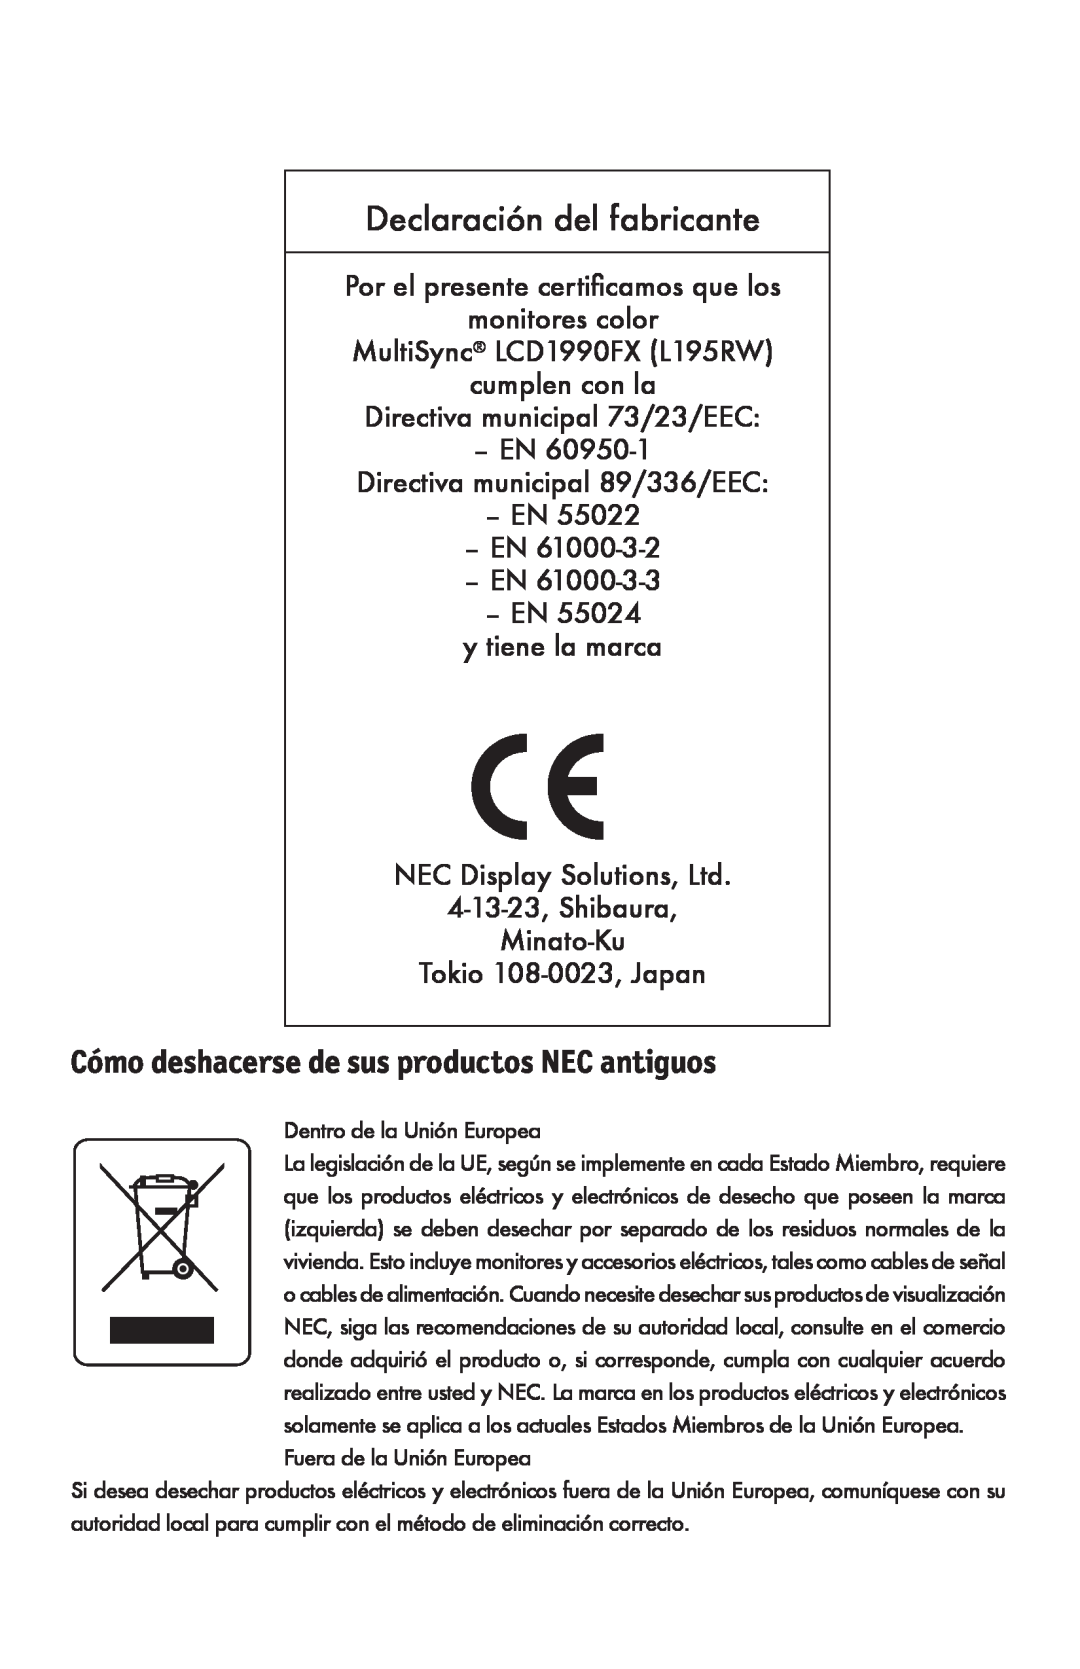 NEC LCD1990FXTM user manual Declaración del fabricante, Cómo deshacerse de sus productos NEC antiguos 